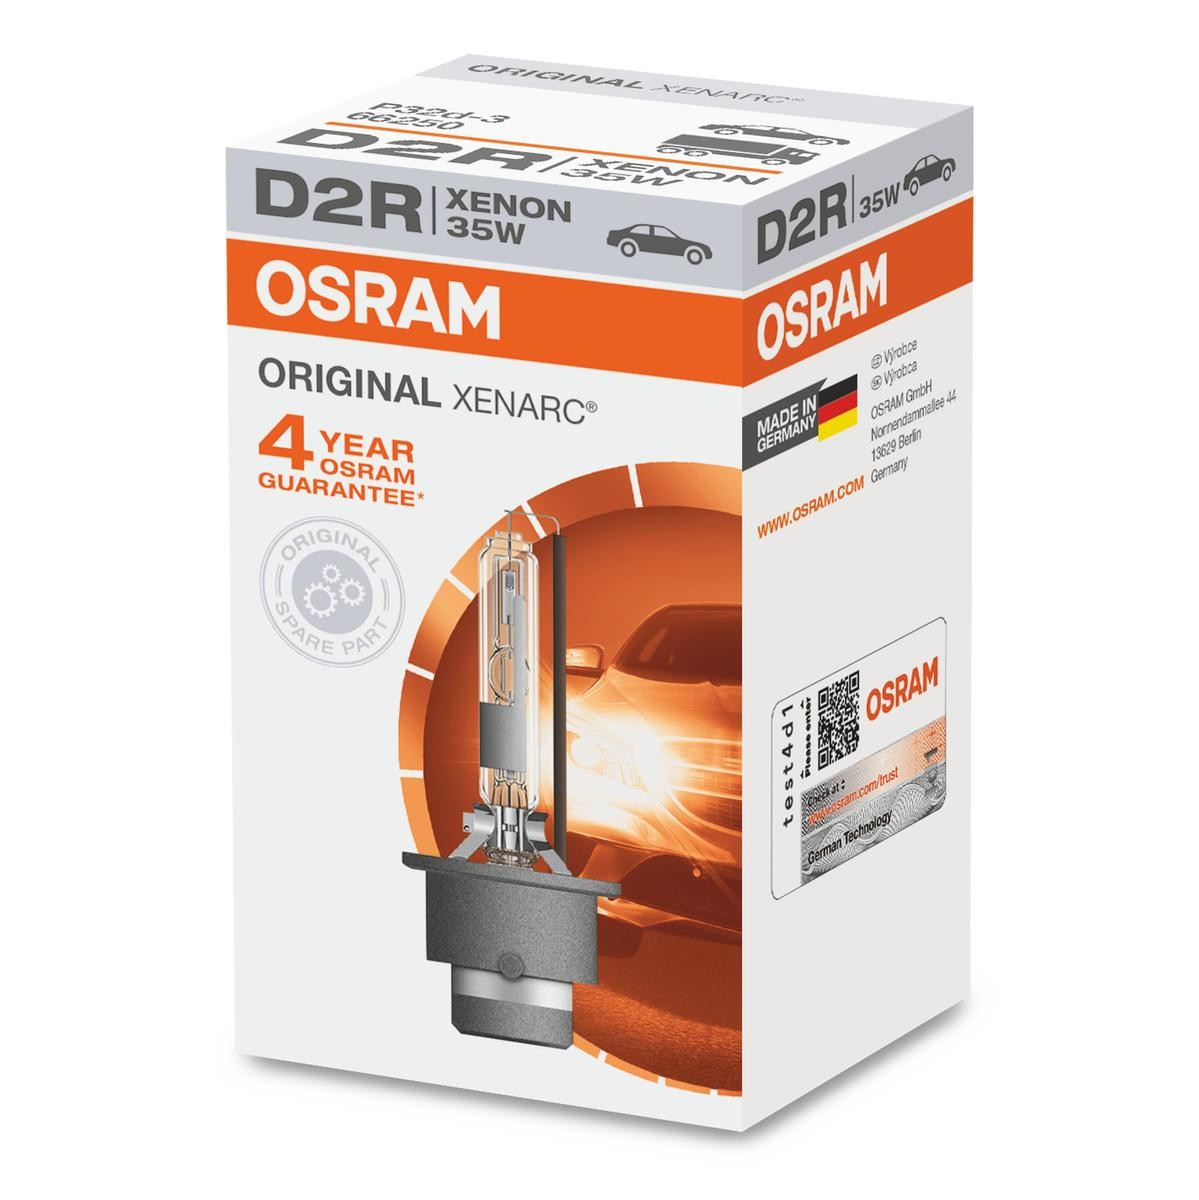 OSRAM Glühlampe, Fernscheinwerfer